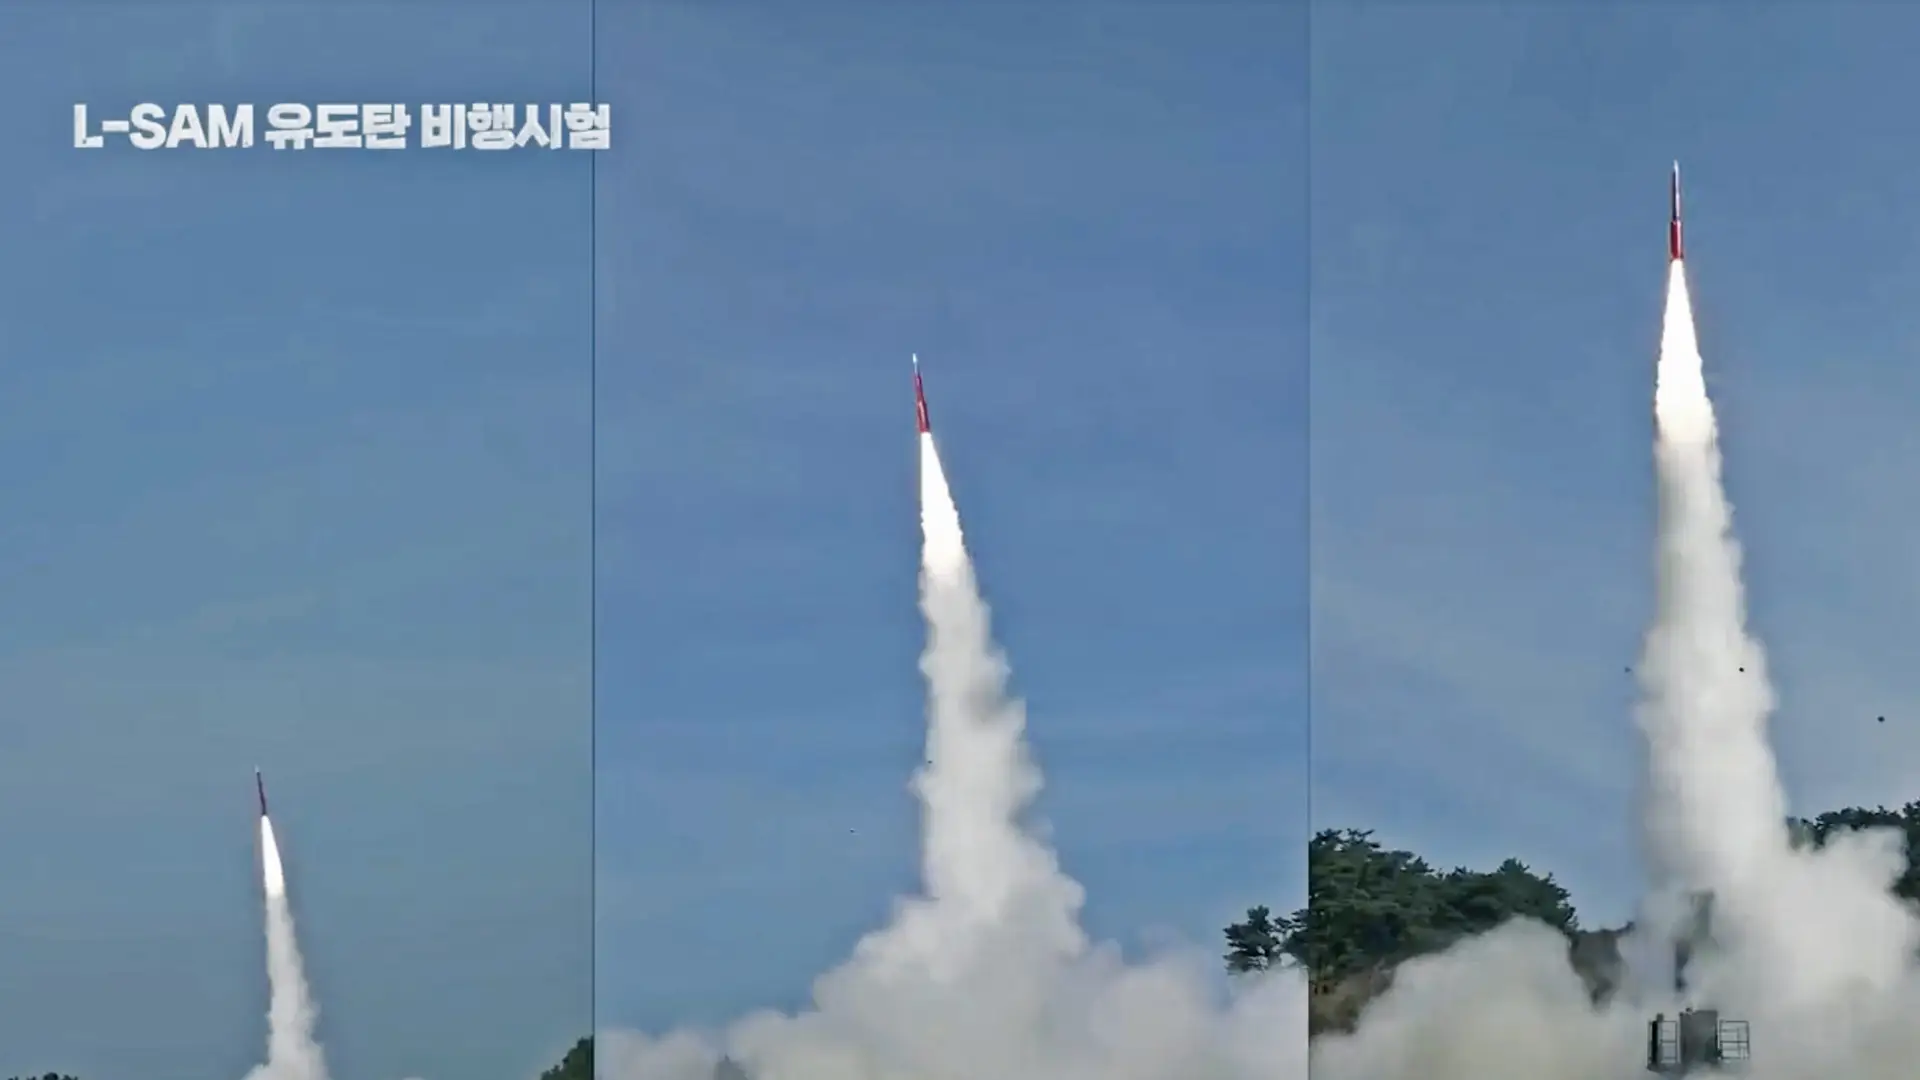 Korea Południowa testuje system obrony przeciwrakietowej L-SAM, który ma przechwytywać rakiety balistyczne na wysokości do 60 km